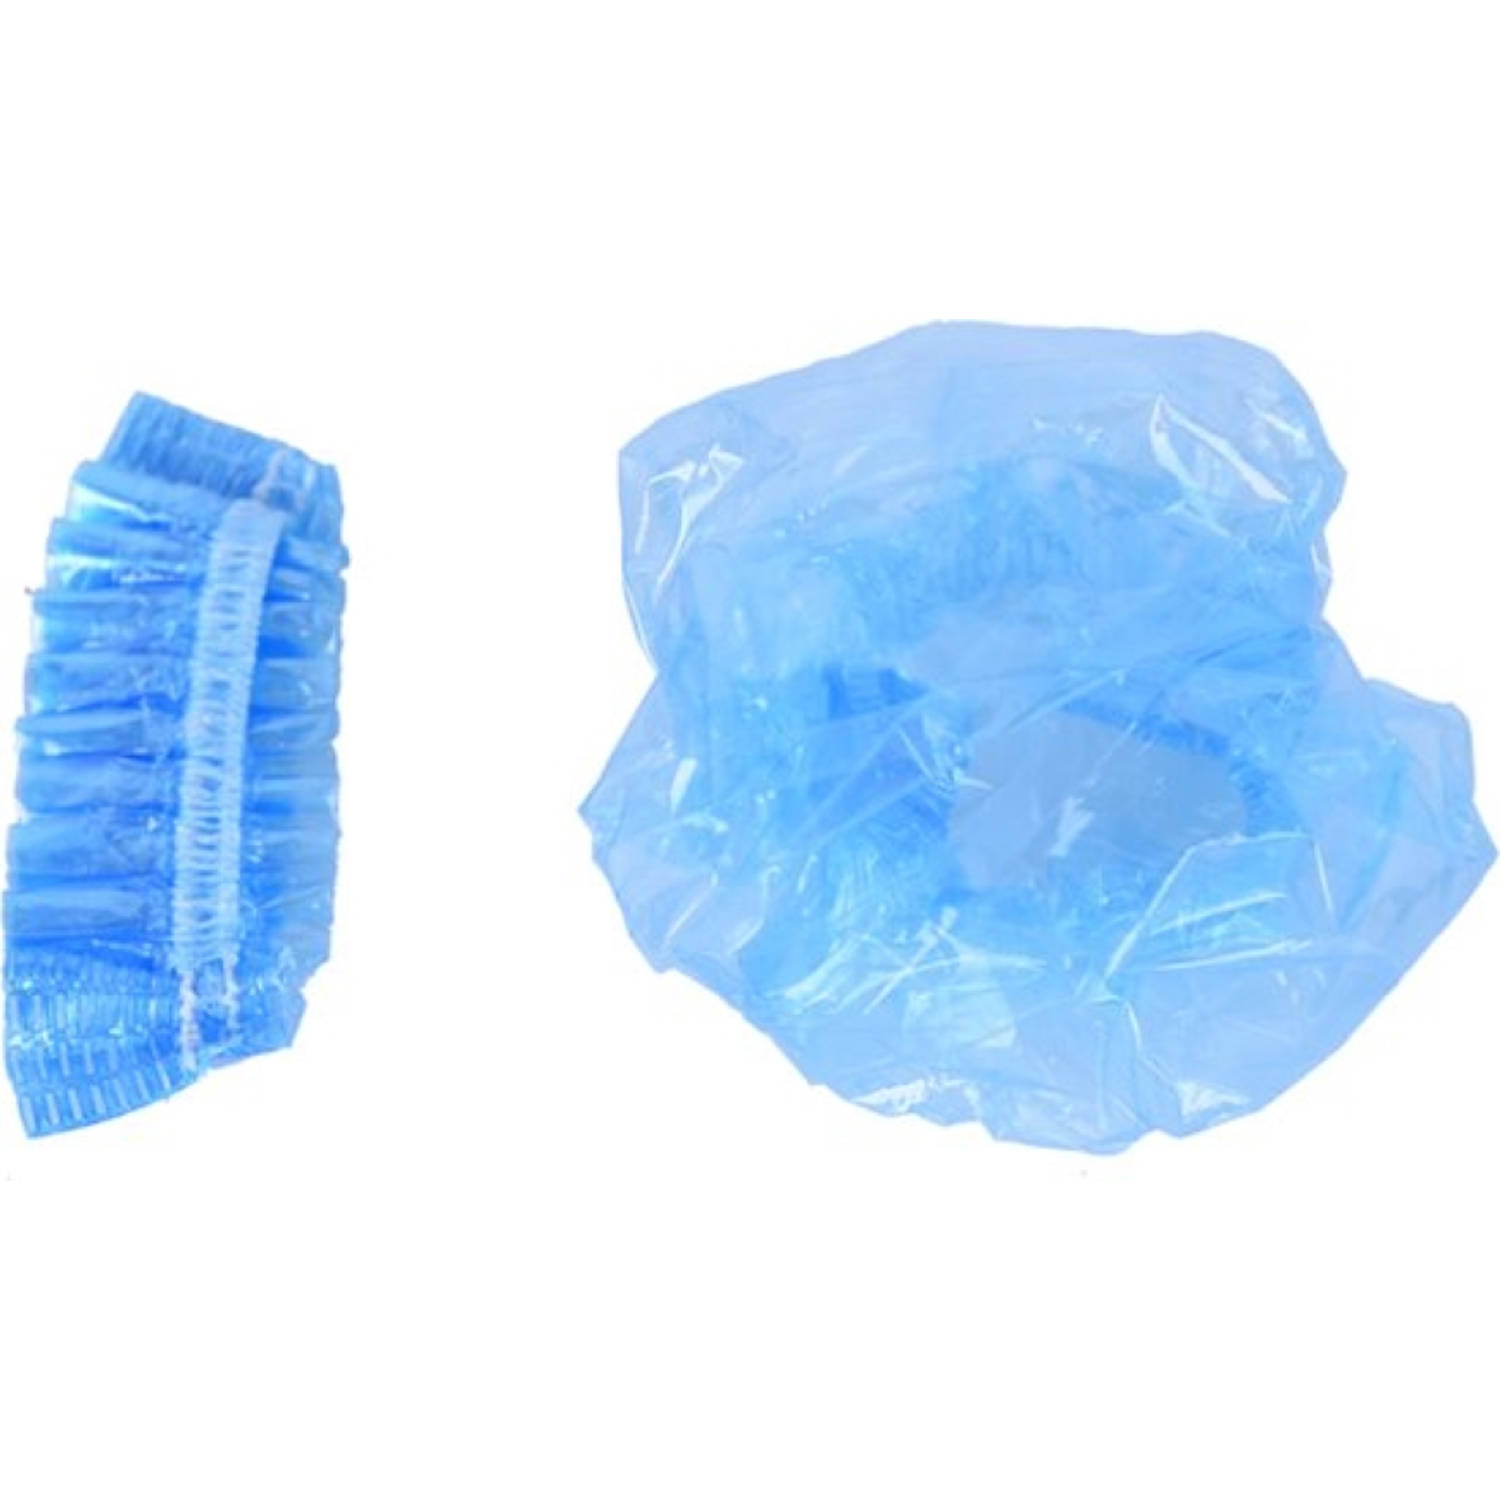 Oorschelp bescherming | Transparant Blauw | 10 stuks | Oorkapje voor tijdens Douchen | Hechtingen | Operatie | Haar verven